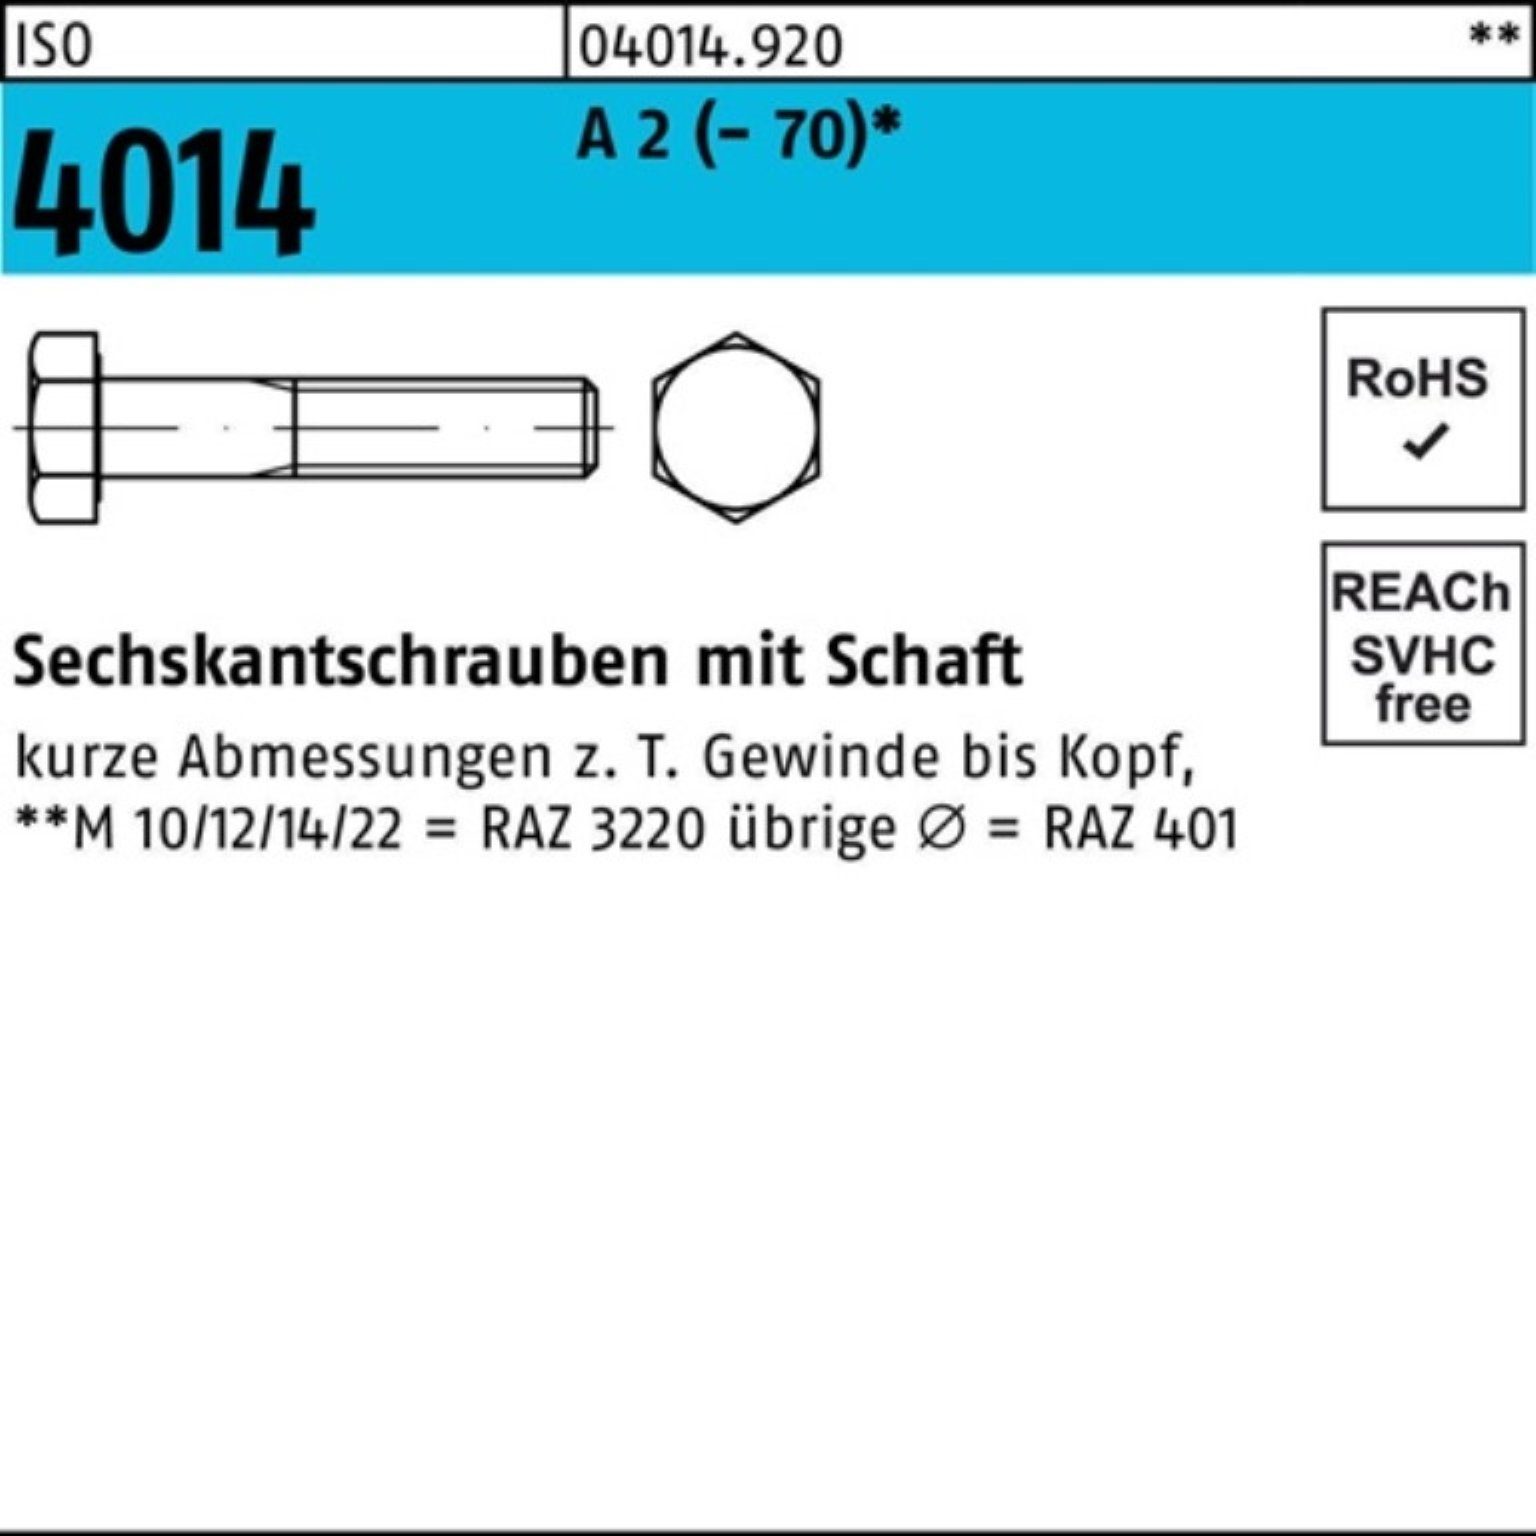 Bufab Sechskantschraube 100er Pack Sechskantschraube ISO 4014 Schaft M16x 230 A 2 (70) 1 St